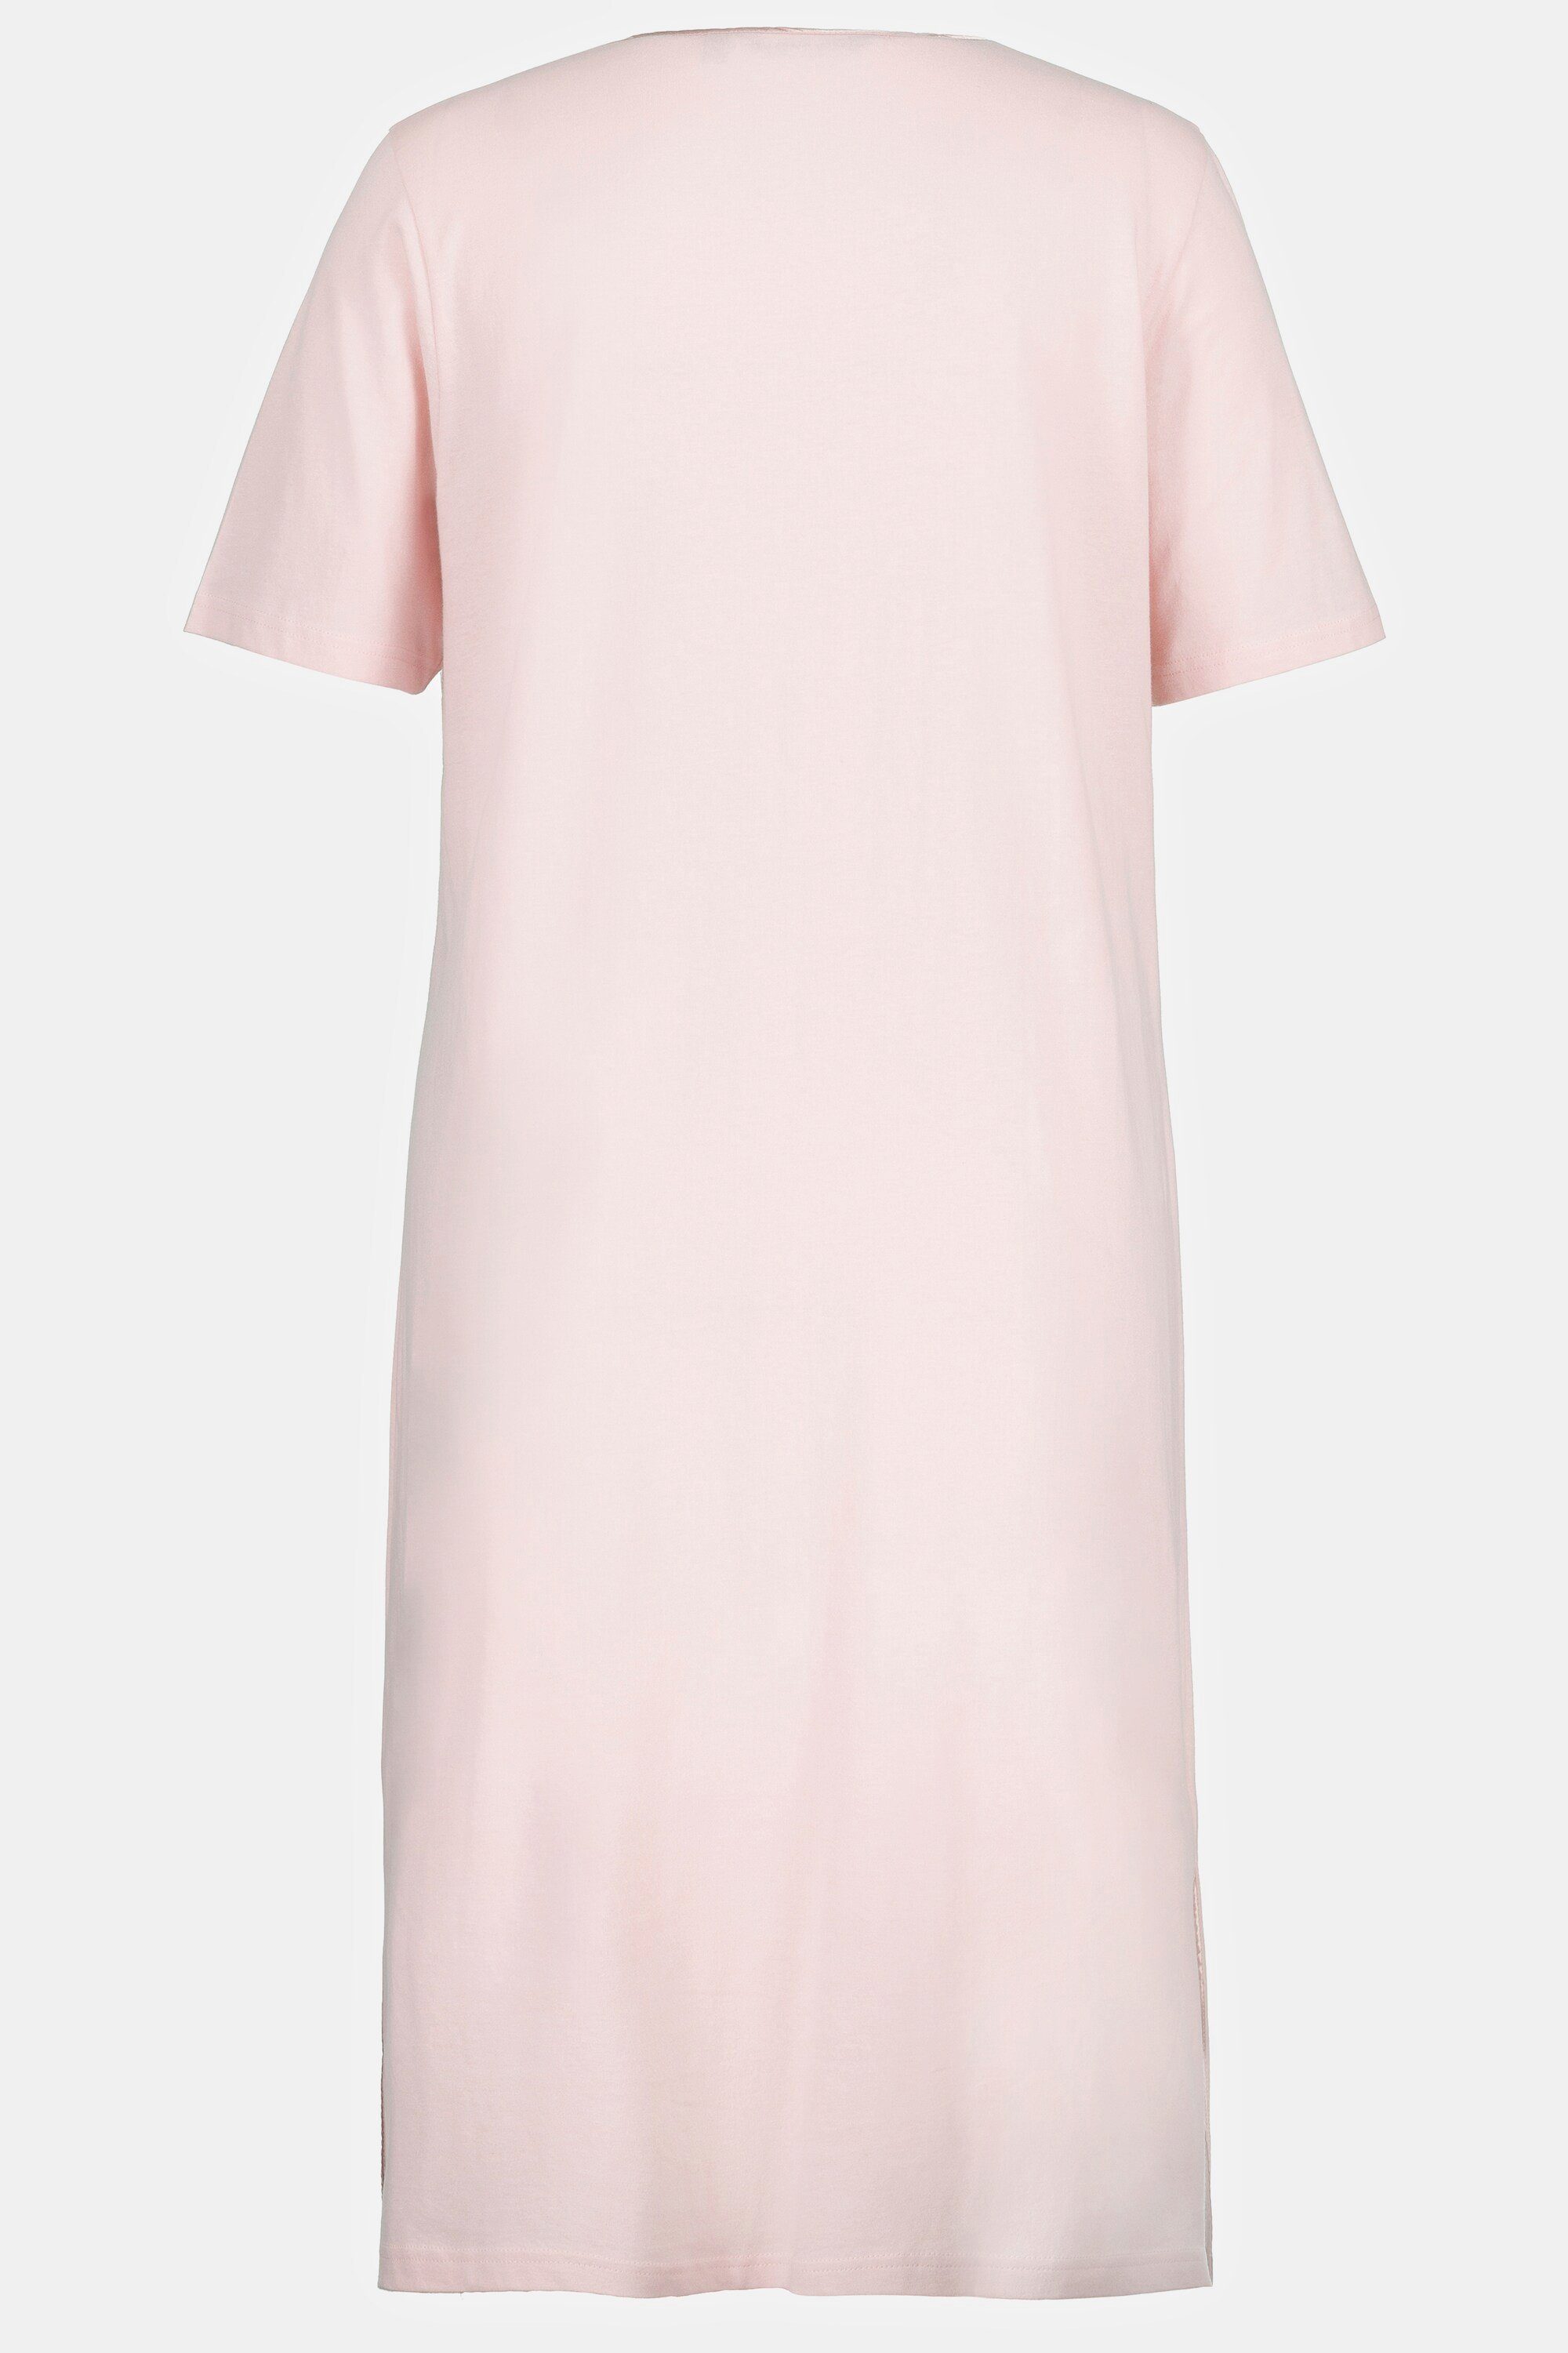 Nachthemd rosa Halbarm Popken Satinpaspel Ulla Nachthemd Tunika-Ausschnitt blasses